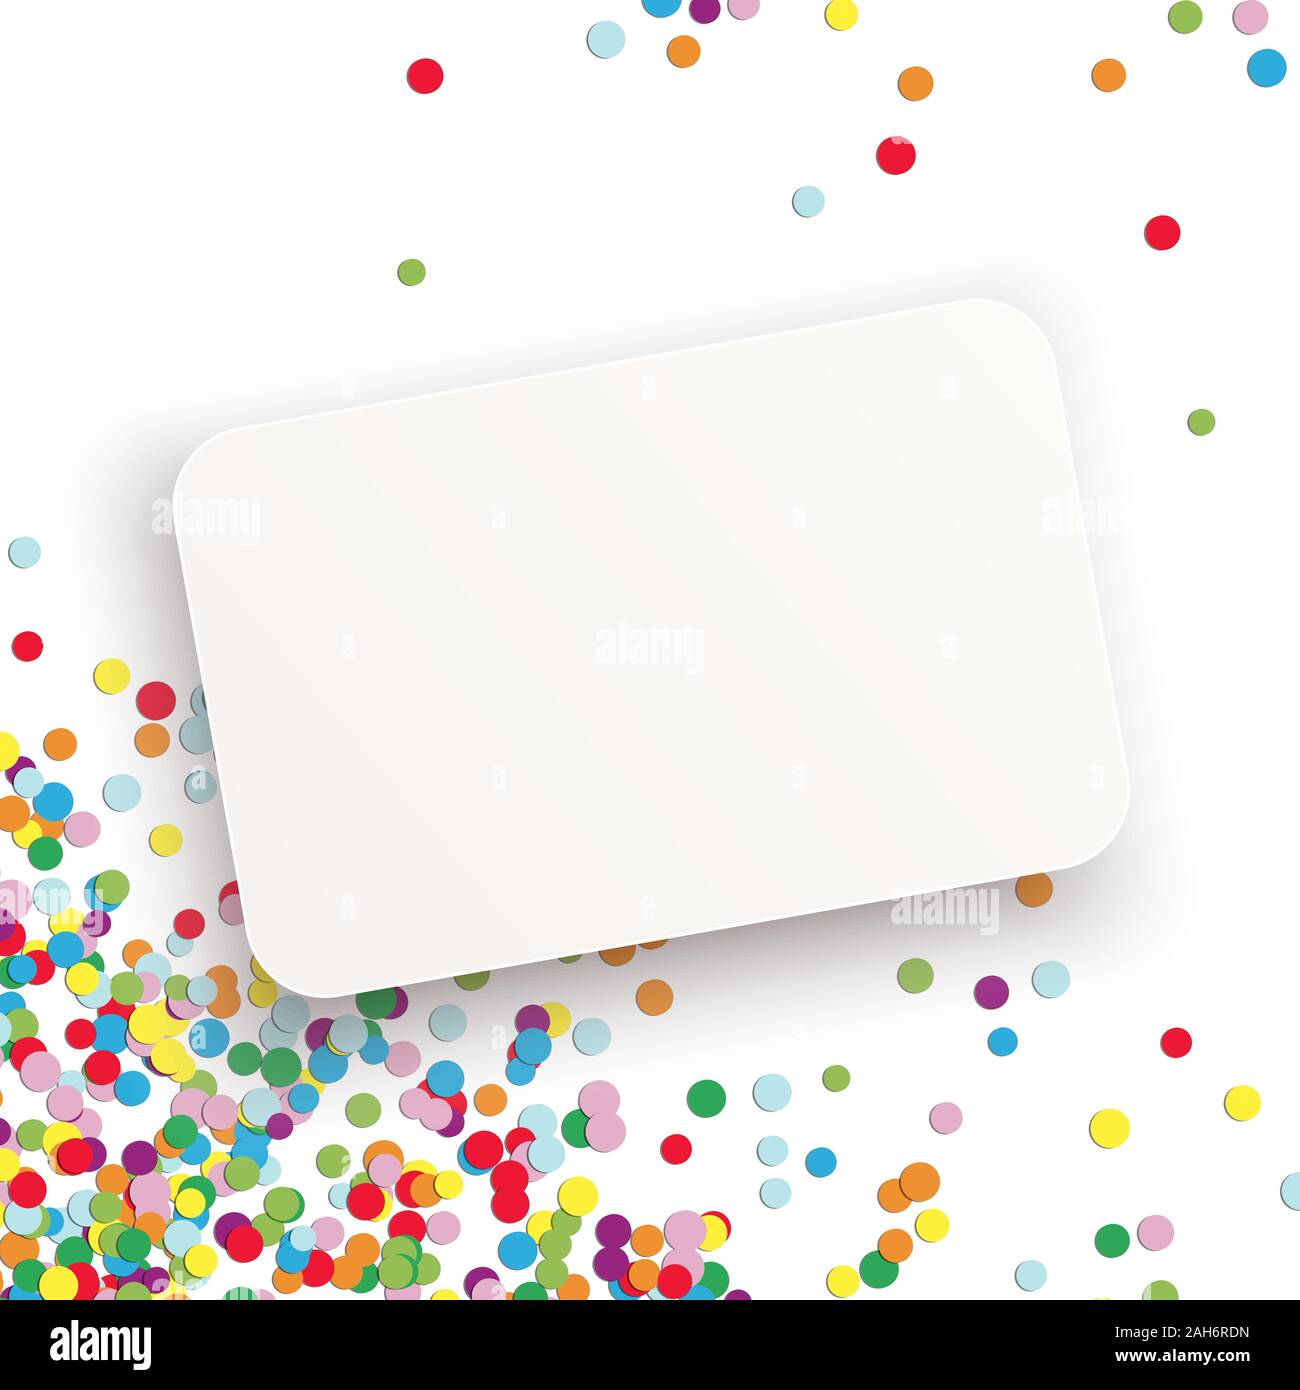 Vector illustration avec arrière-plan avec différentes couleurs de confettis pour le temps de l'anniversaire et du papier blanc avec l'espace libre pour les messages d'accueil Illustration de Vecteur